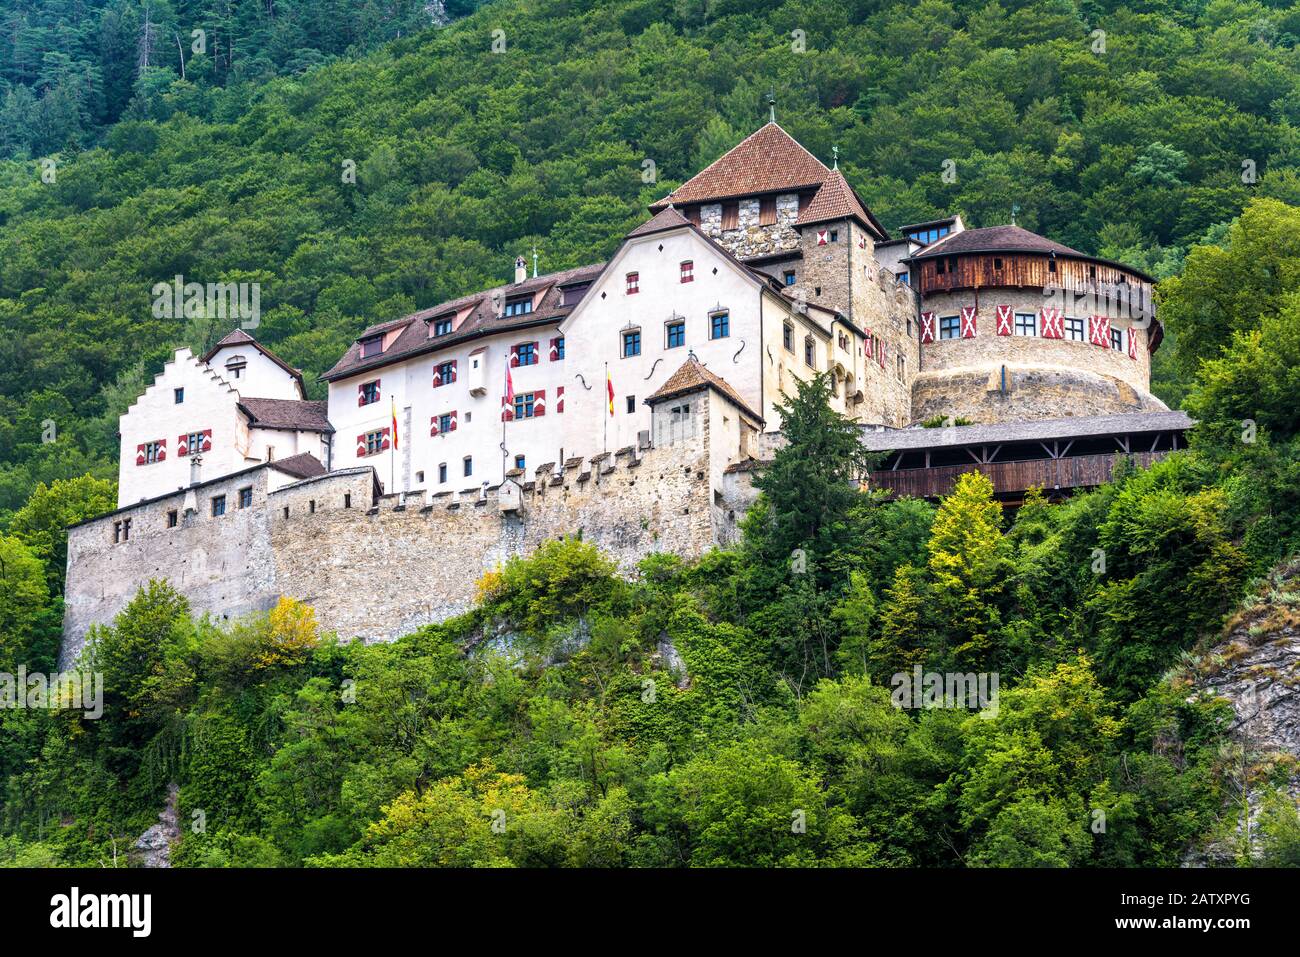 Castello di Vaduz in Liechtenstein. Questo castello reale è un punto di riferimento del Liechtenstein e della Svizzera. Vista panoramica del castello medievale in Alpi montagne in somma Foto Stock